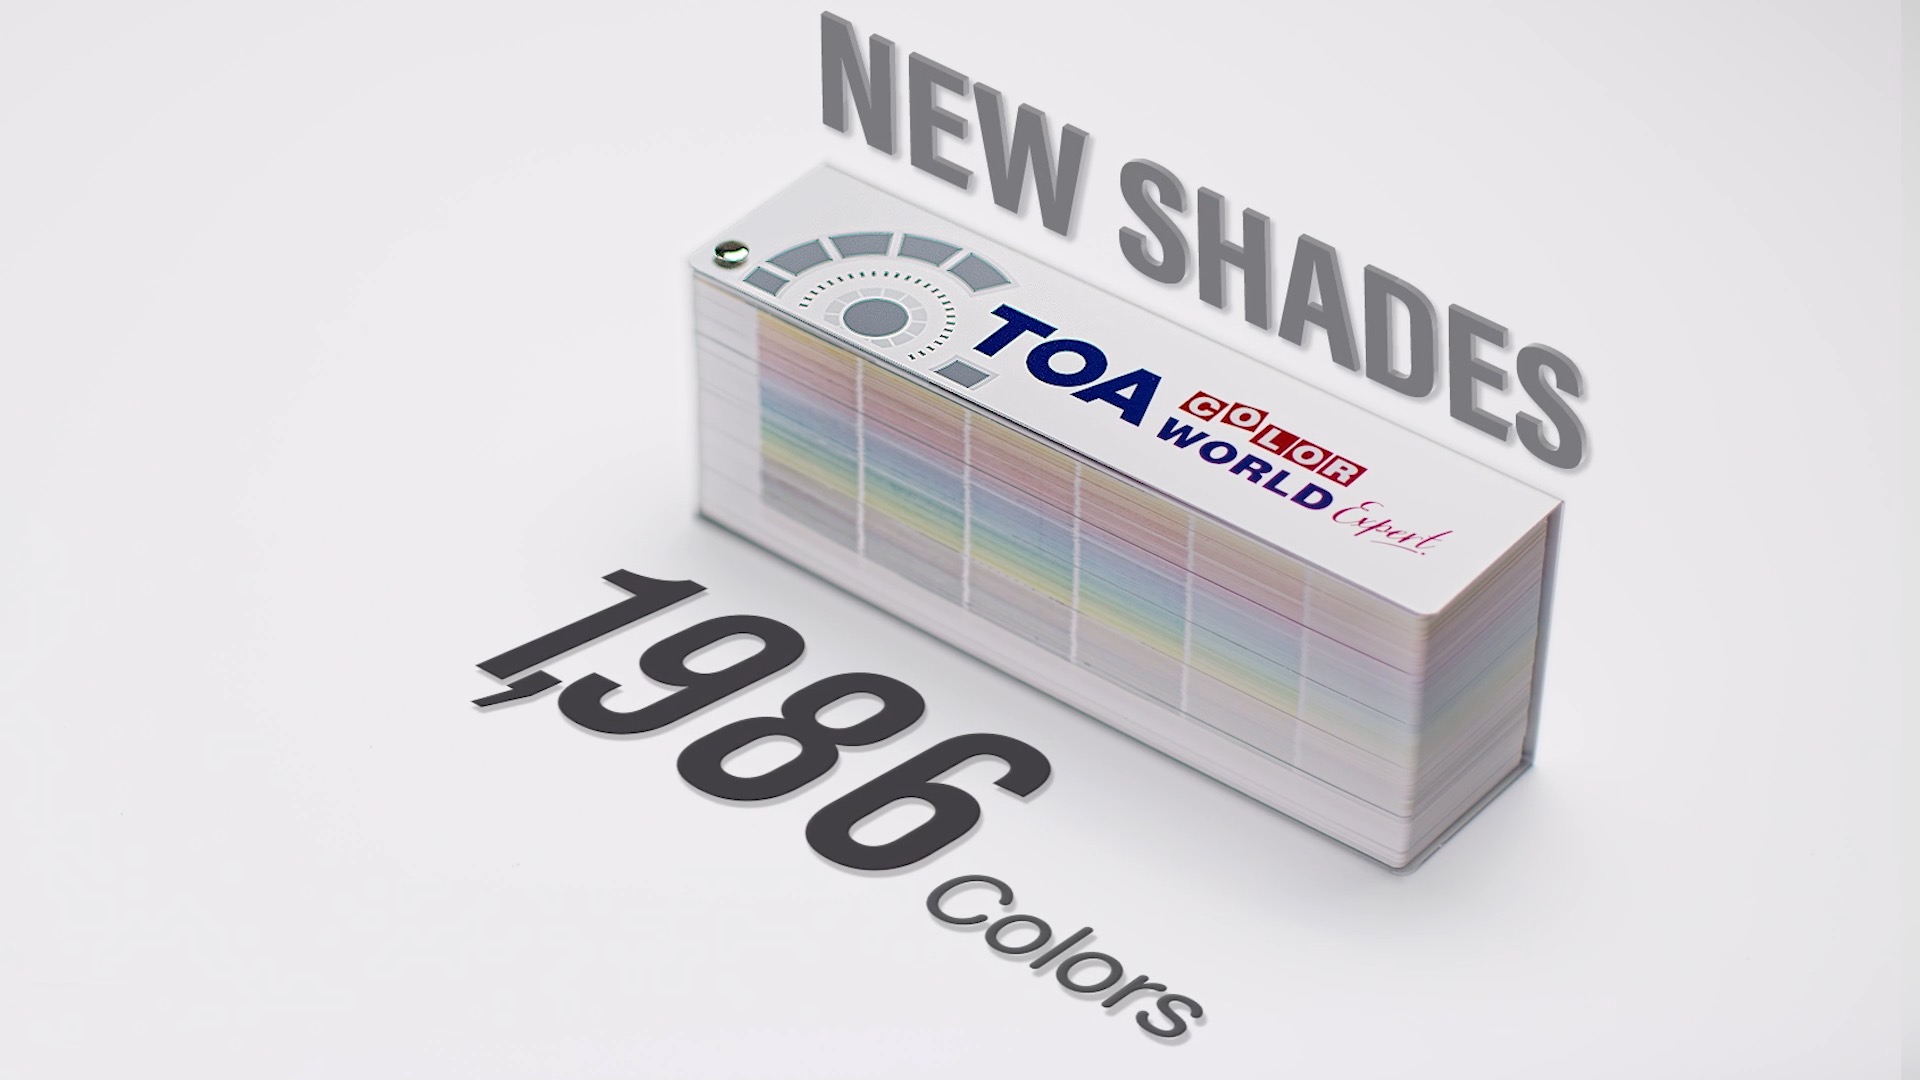 ใหม่ล่าสุด! TOA Color World Expert New Fandeck  พัดสีเล่มใหม่จาก TOA